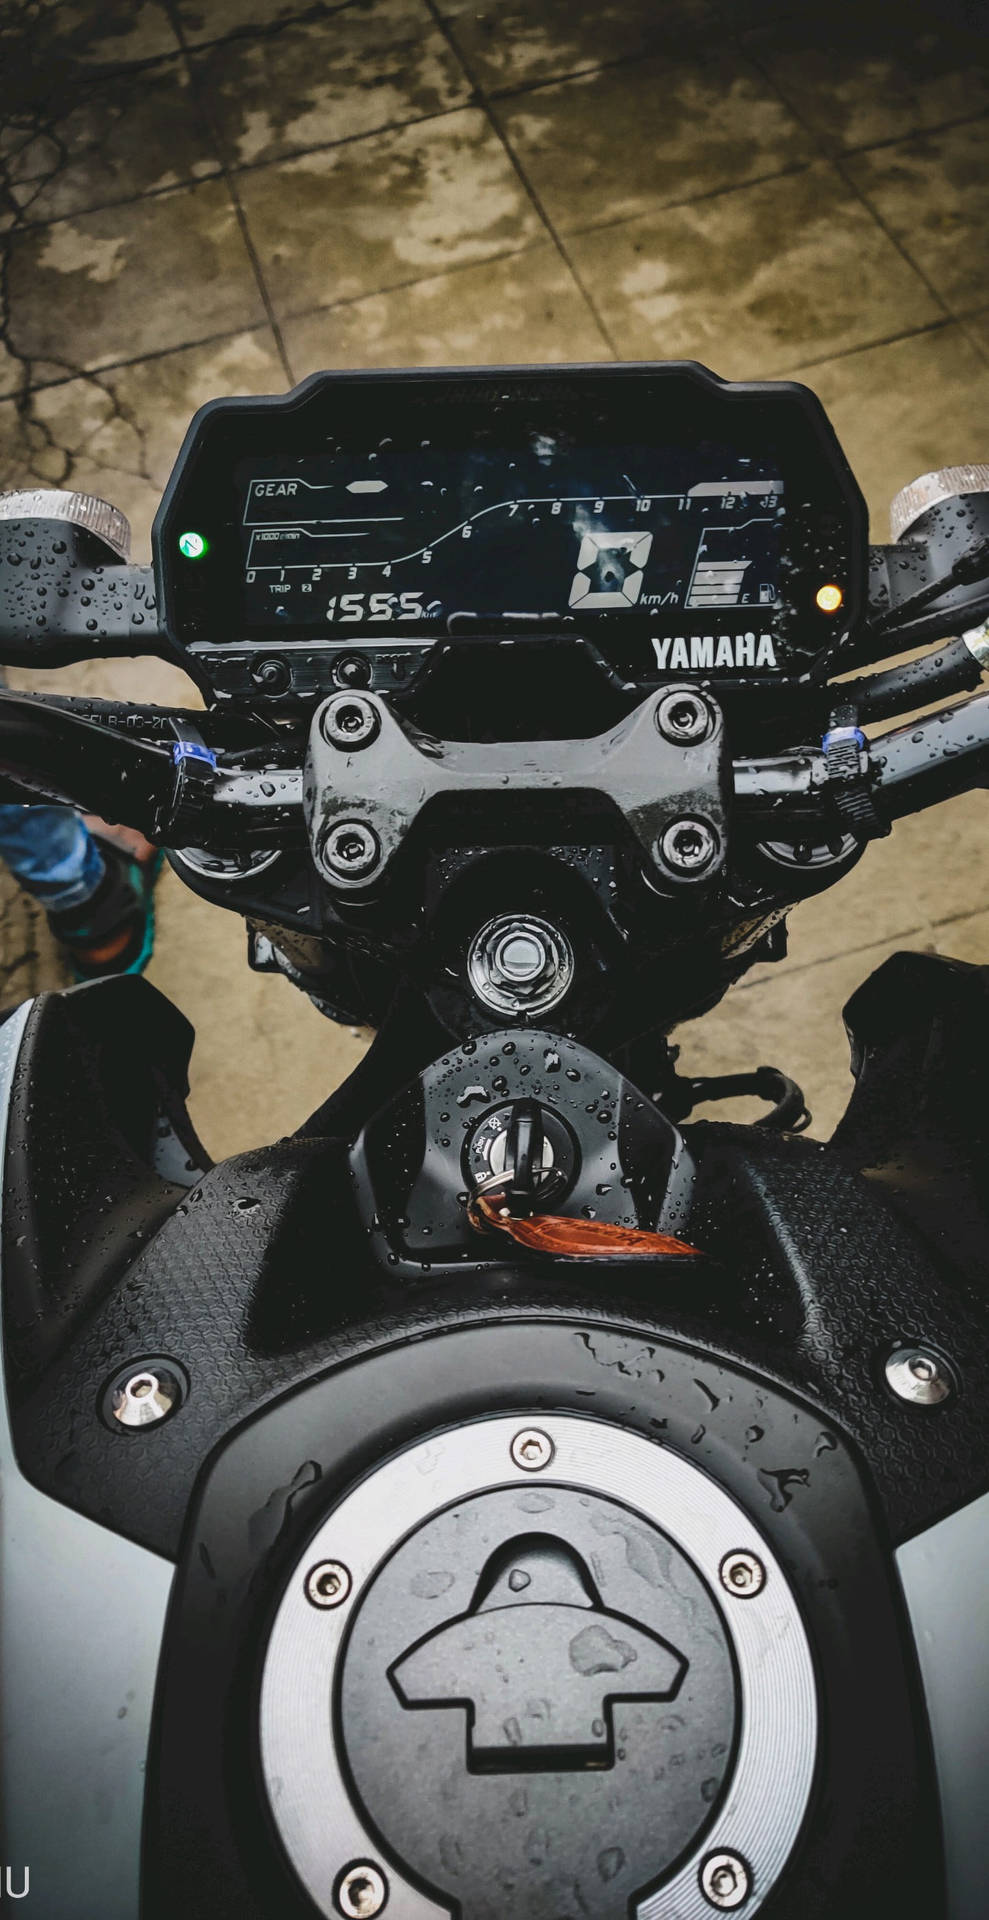 Black Yamaha Mt 15 Bike Details Background